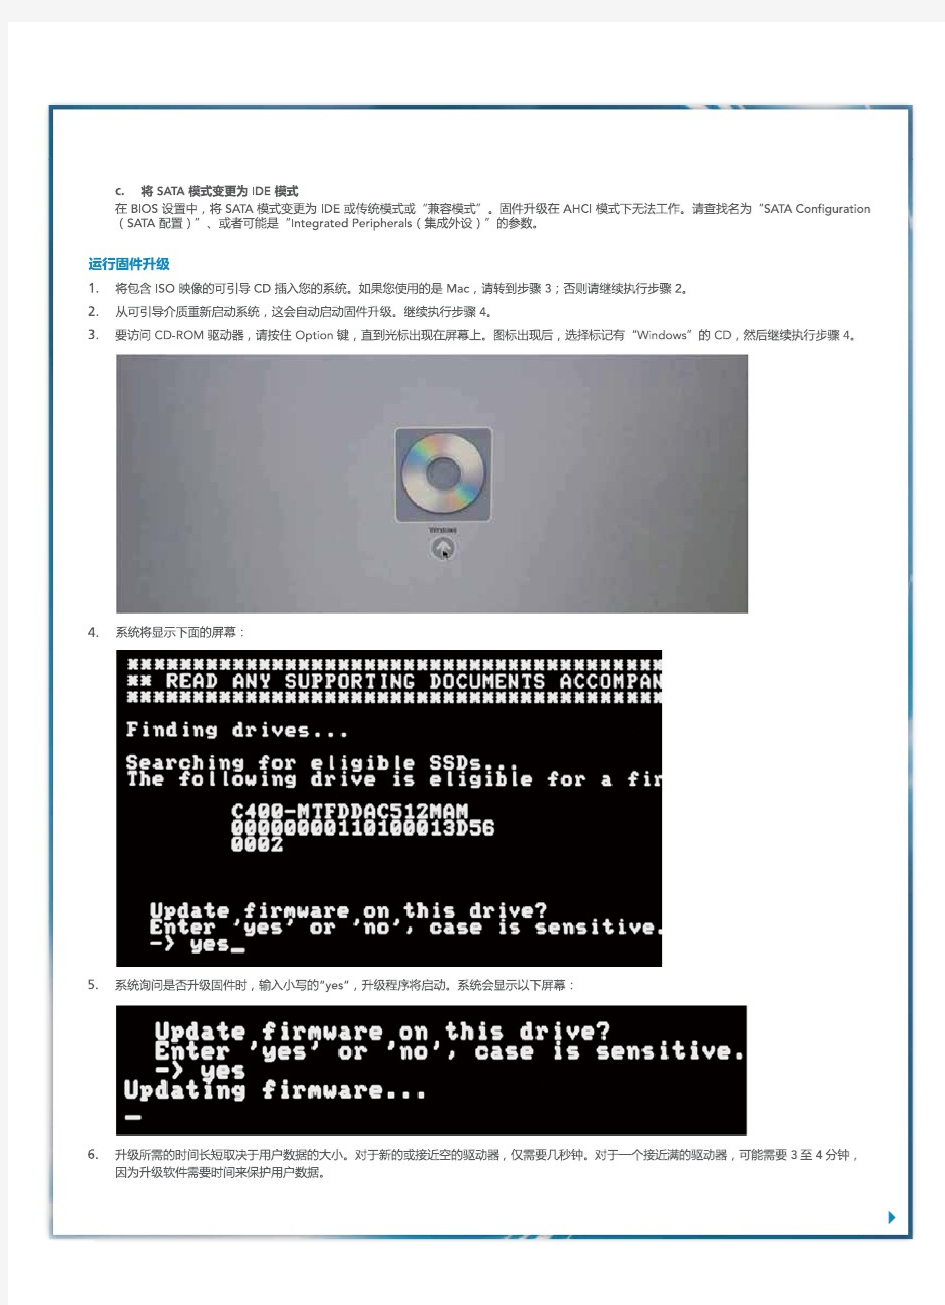 镁光M4固态硬盘固件升级(0309)说明 官方中文版